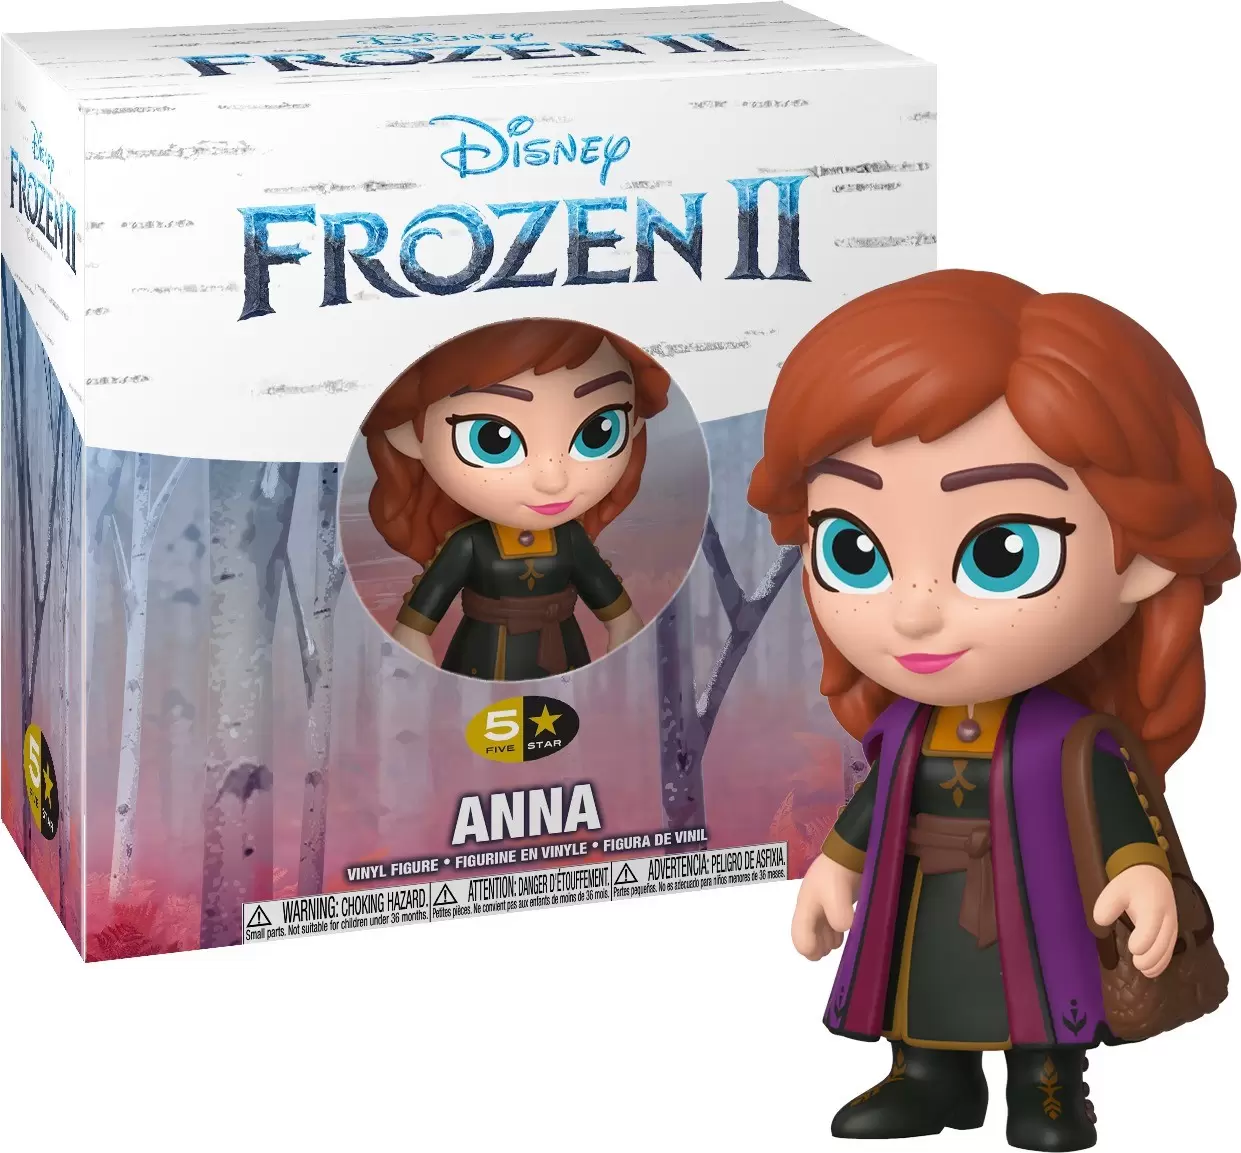 Frozen II - Anna